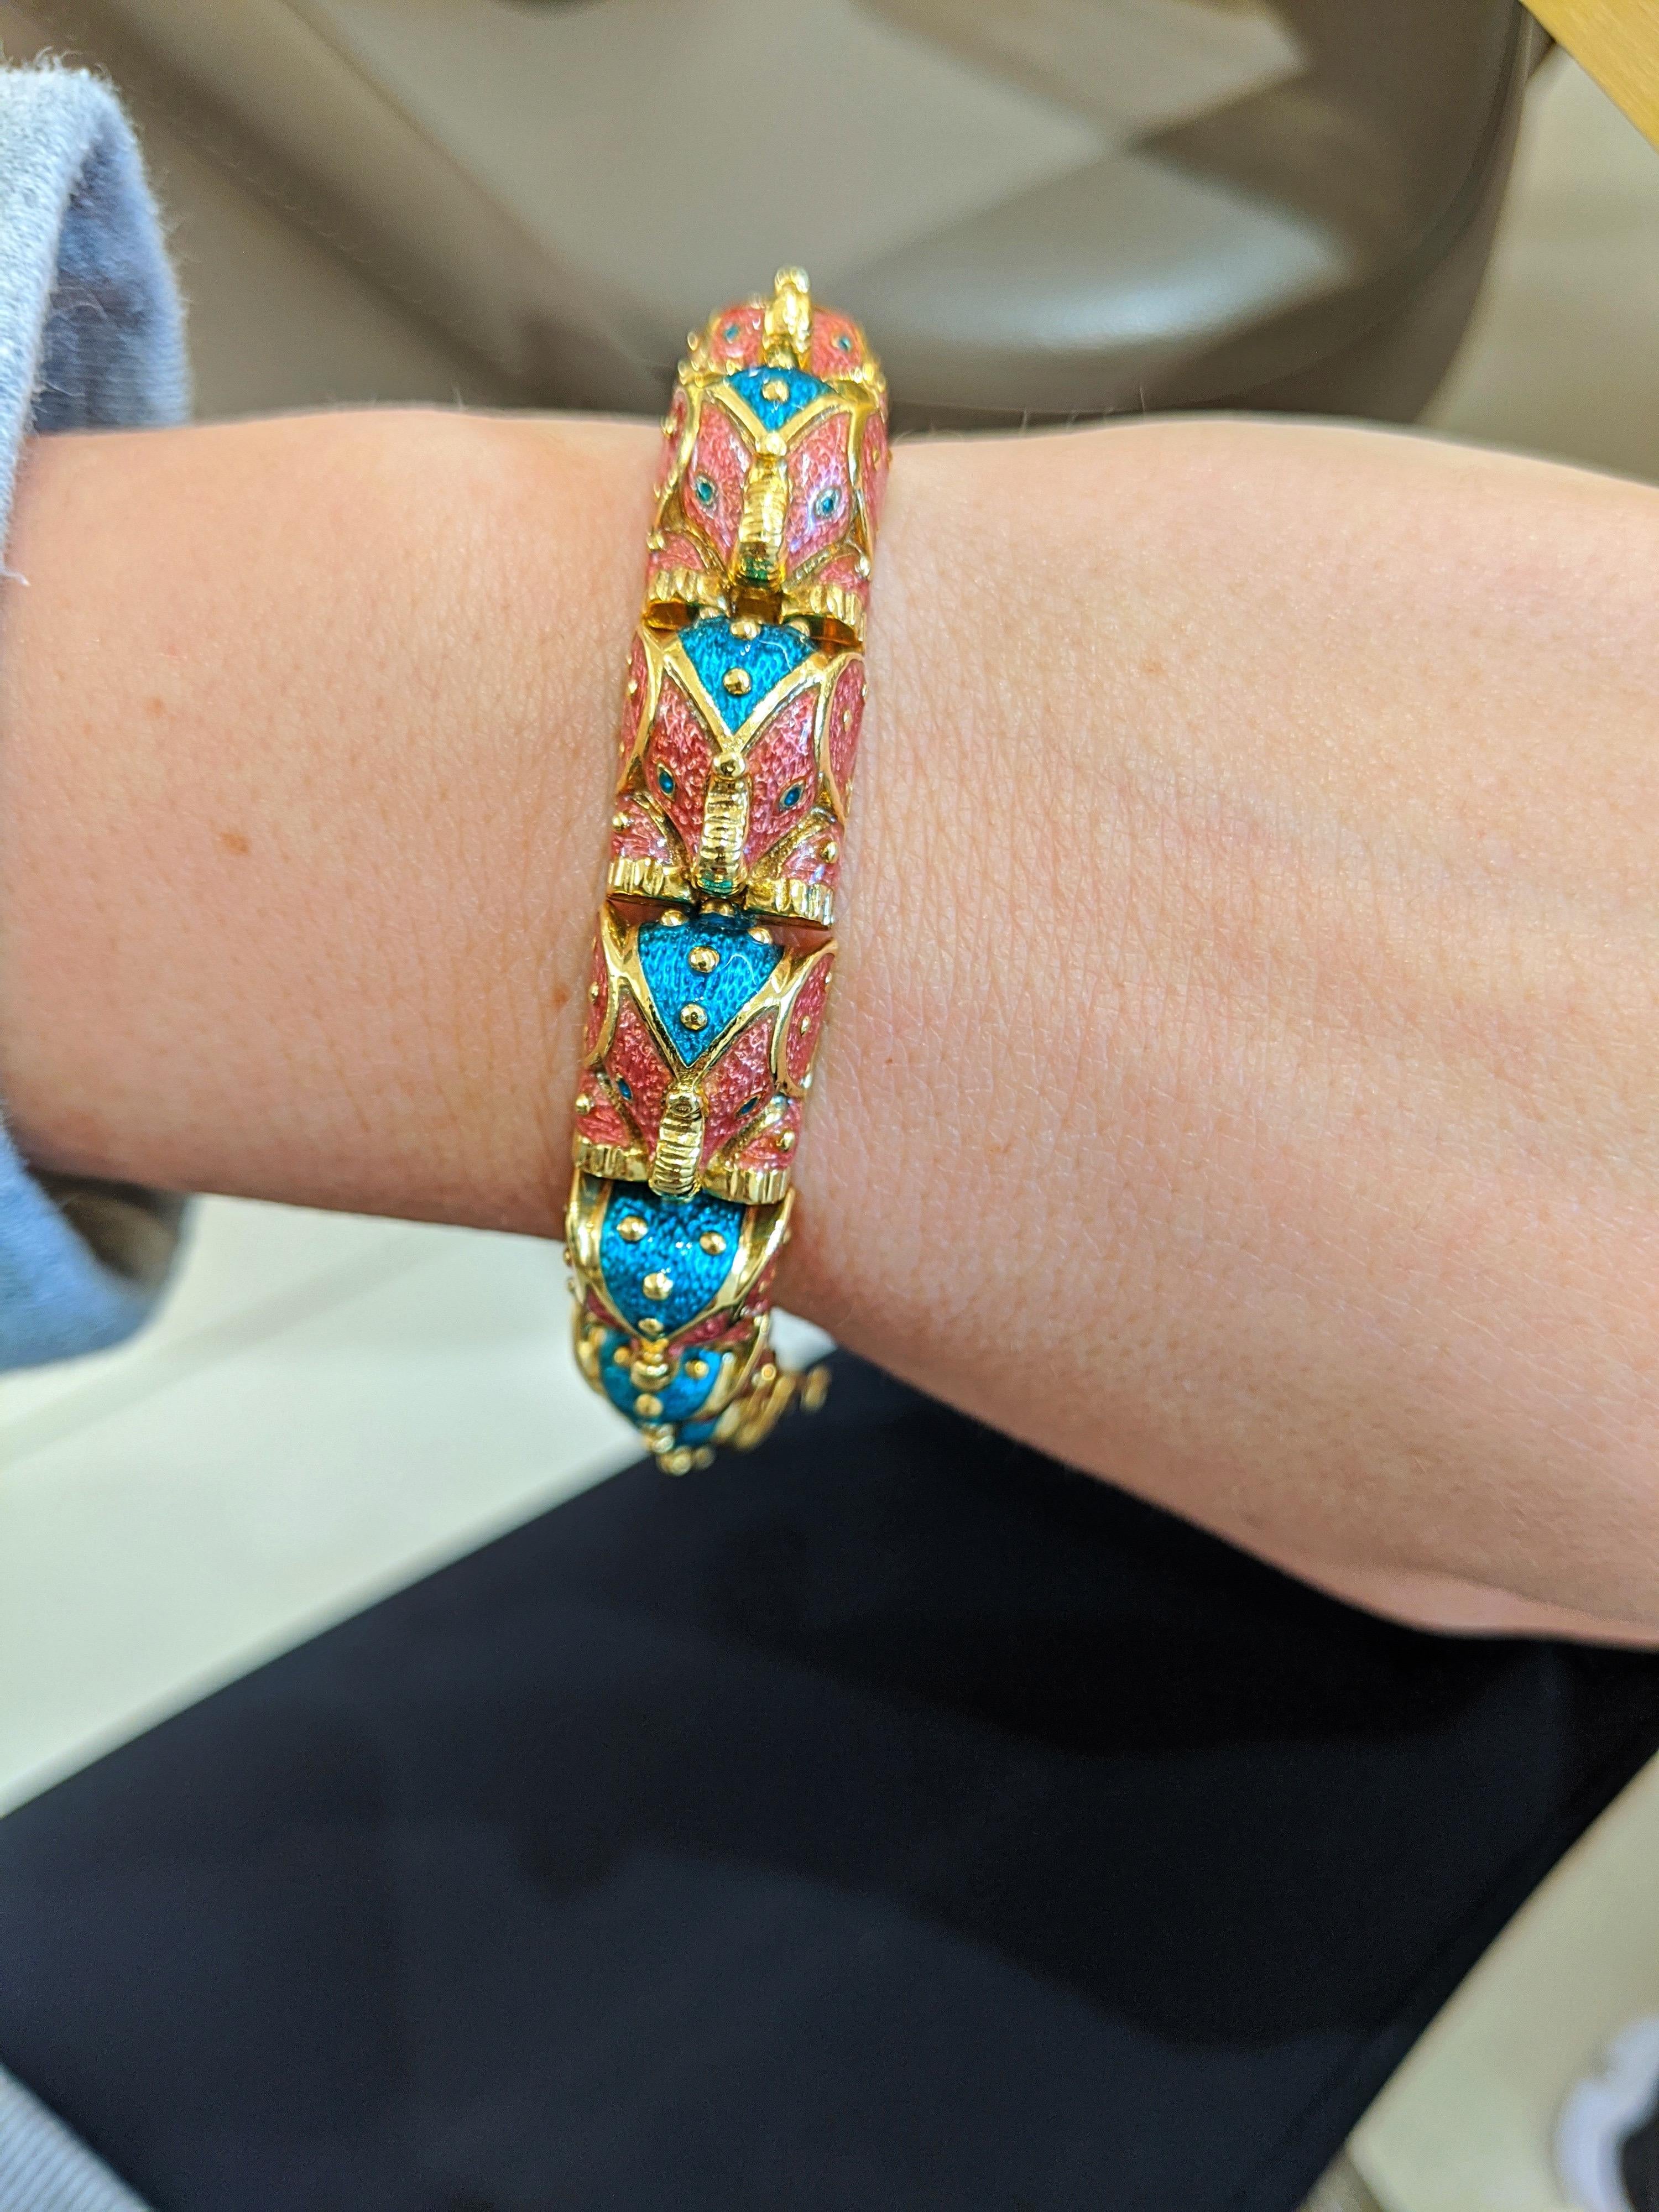 Ce bracelet en or jaune 18 carats a été conçu par Hidalgo.  La société est surtout connue pour ses magnifiques travaux d'émaillage. Ce bracelet est composé de 12 éléphants émaillés roses et verts. Chaque éléphant est un lien individuel. Le bracelet